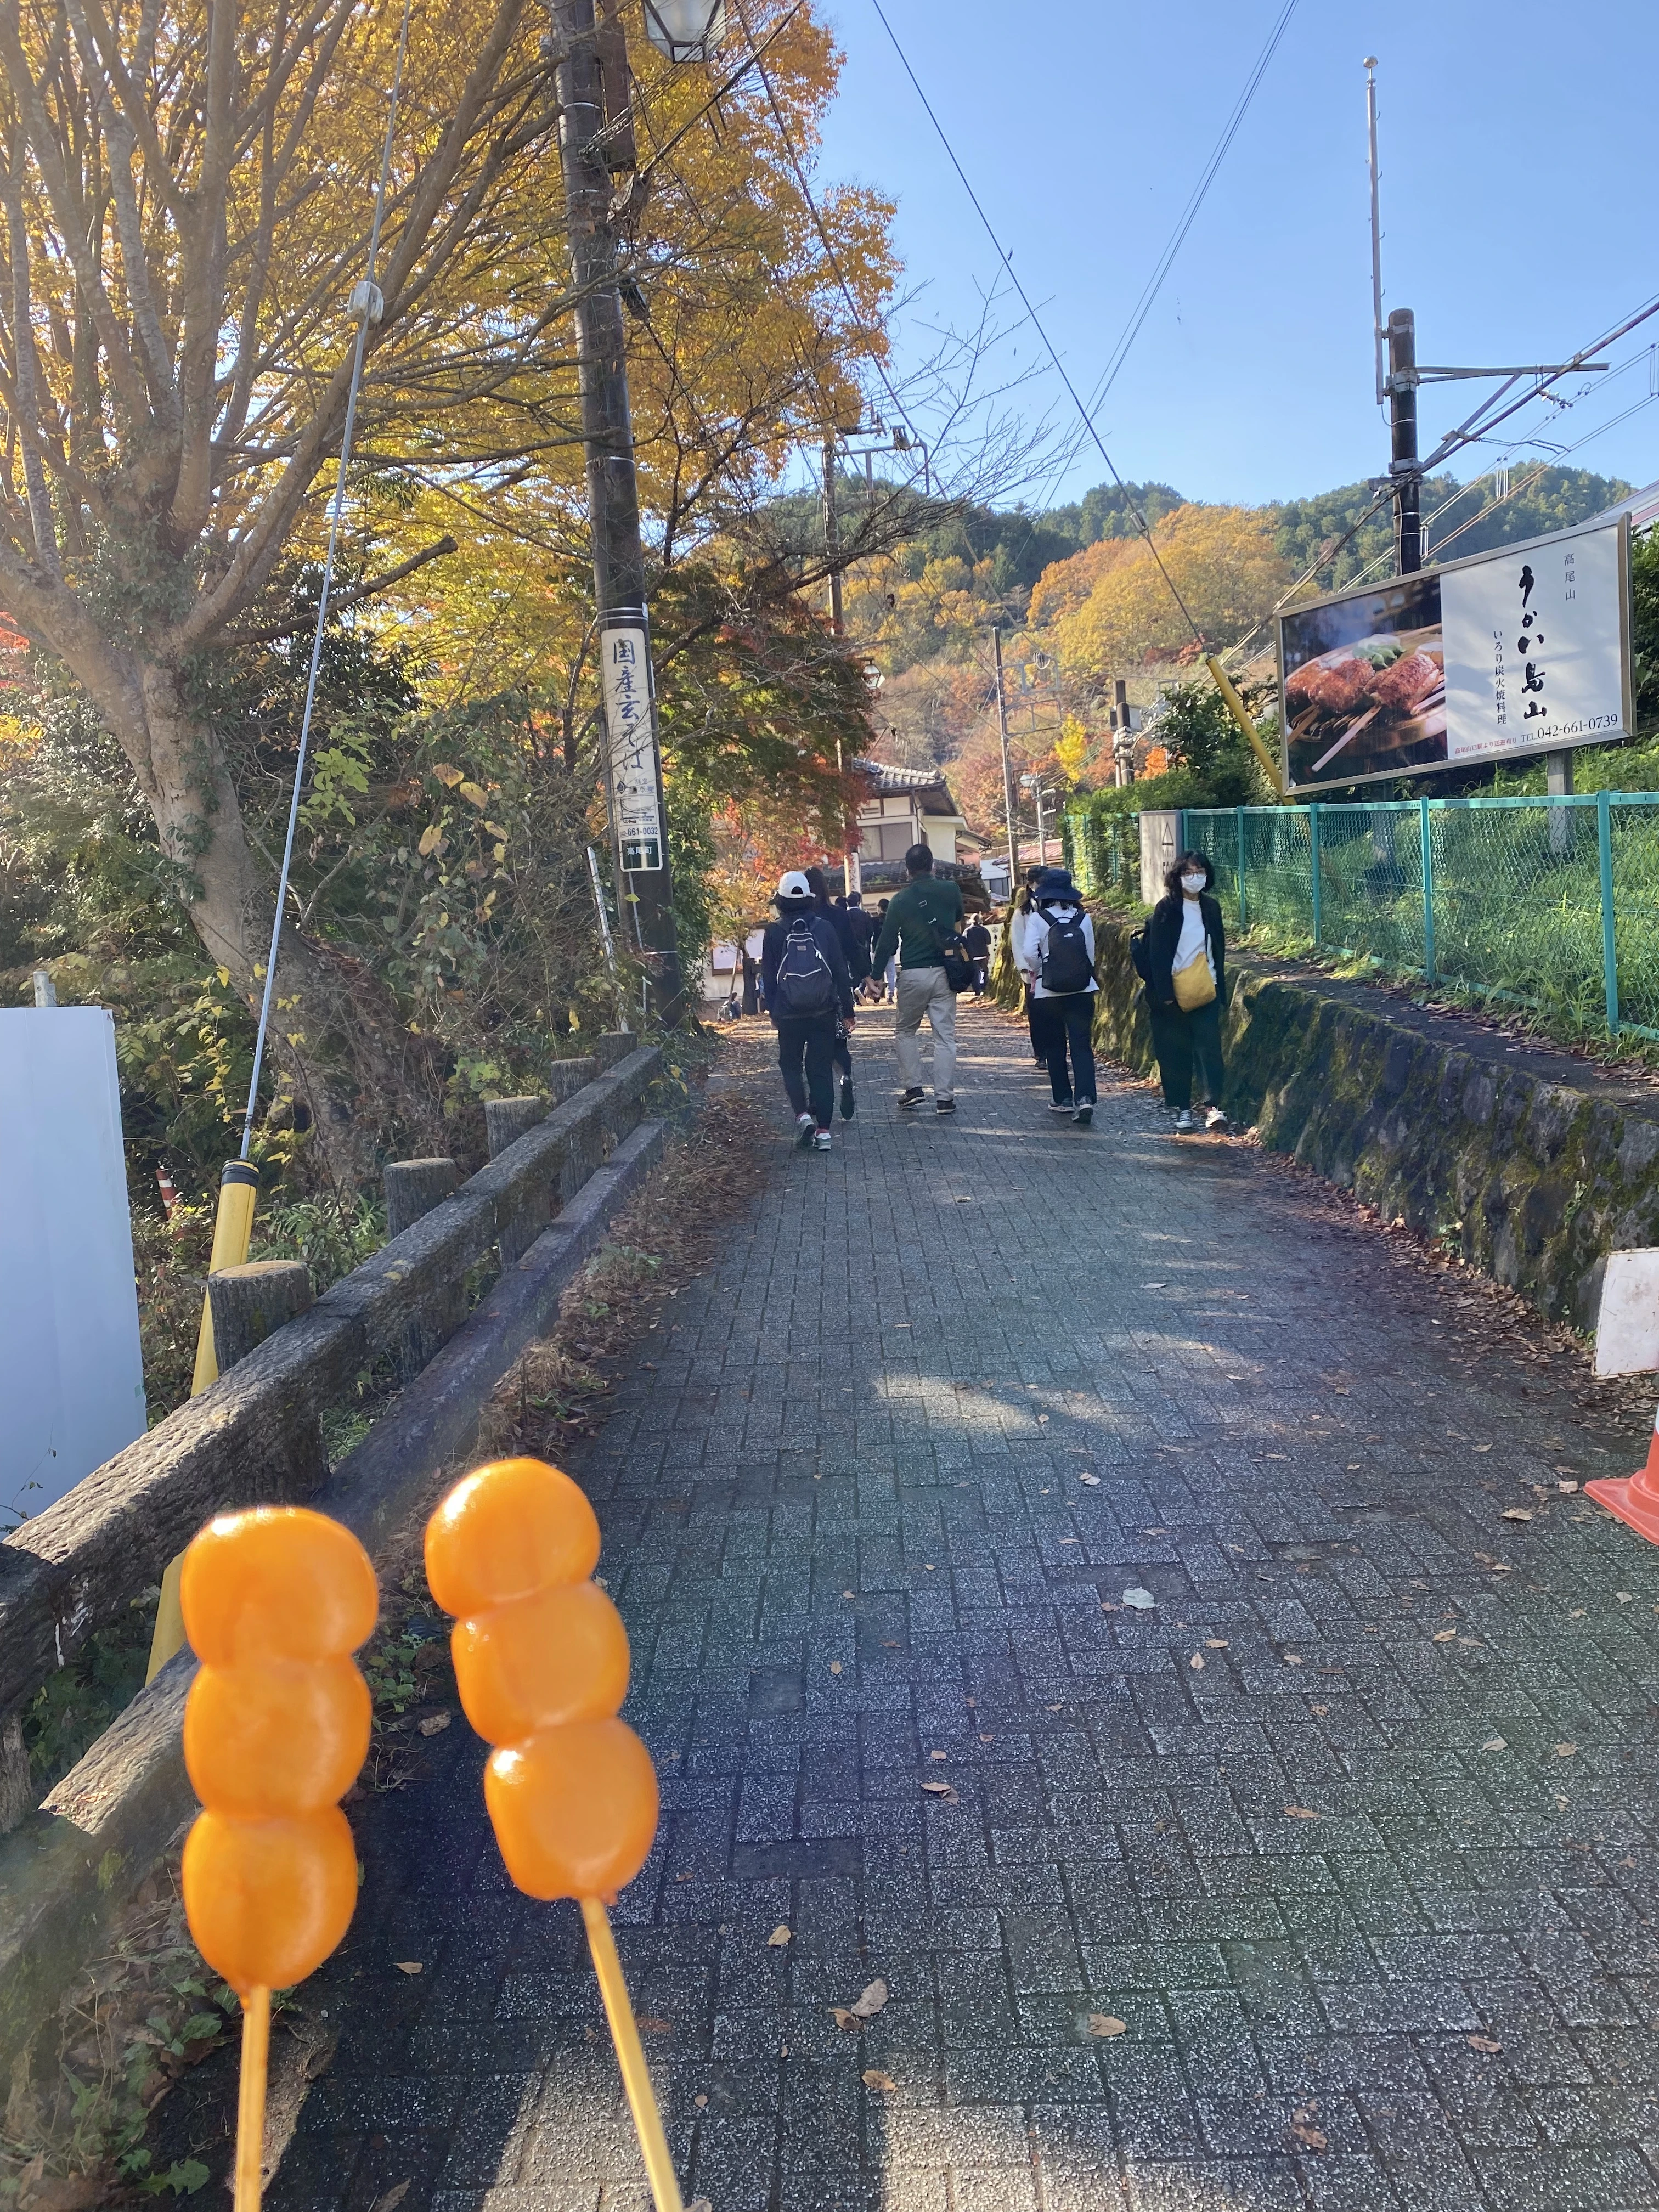 紅葉が綺麗な11月に、東京都八王子市にある高尾山に登山しに行った際に、「高尾山口駅」にあったお団子屋さん前で撮った、しょうゆ団子の写真です。奥には高尾山に向かって伸びる道があり、道の脇には紅葉で黄色や赤に色づき始めた木々があります。手前には、串が通った醤油団子が２つあります。